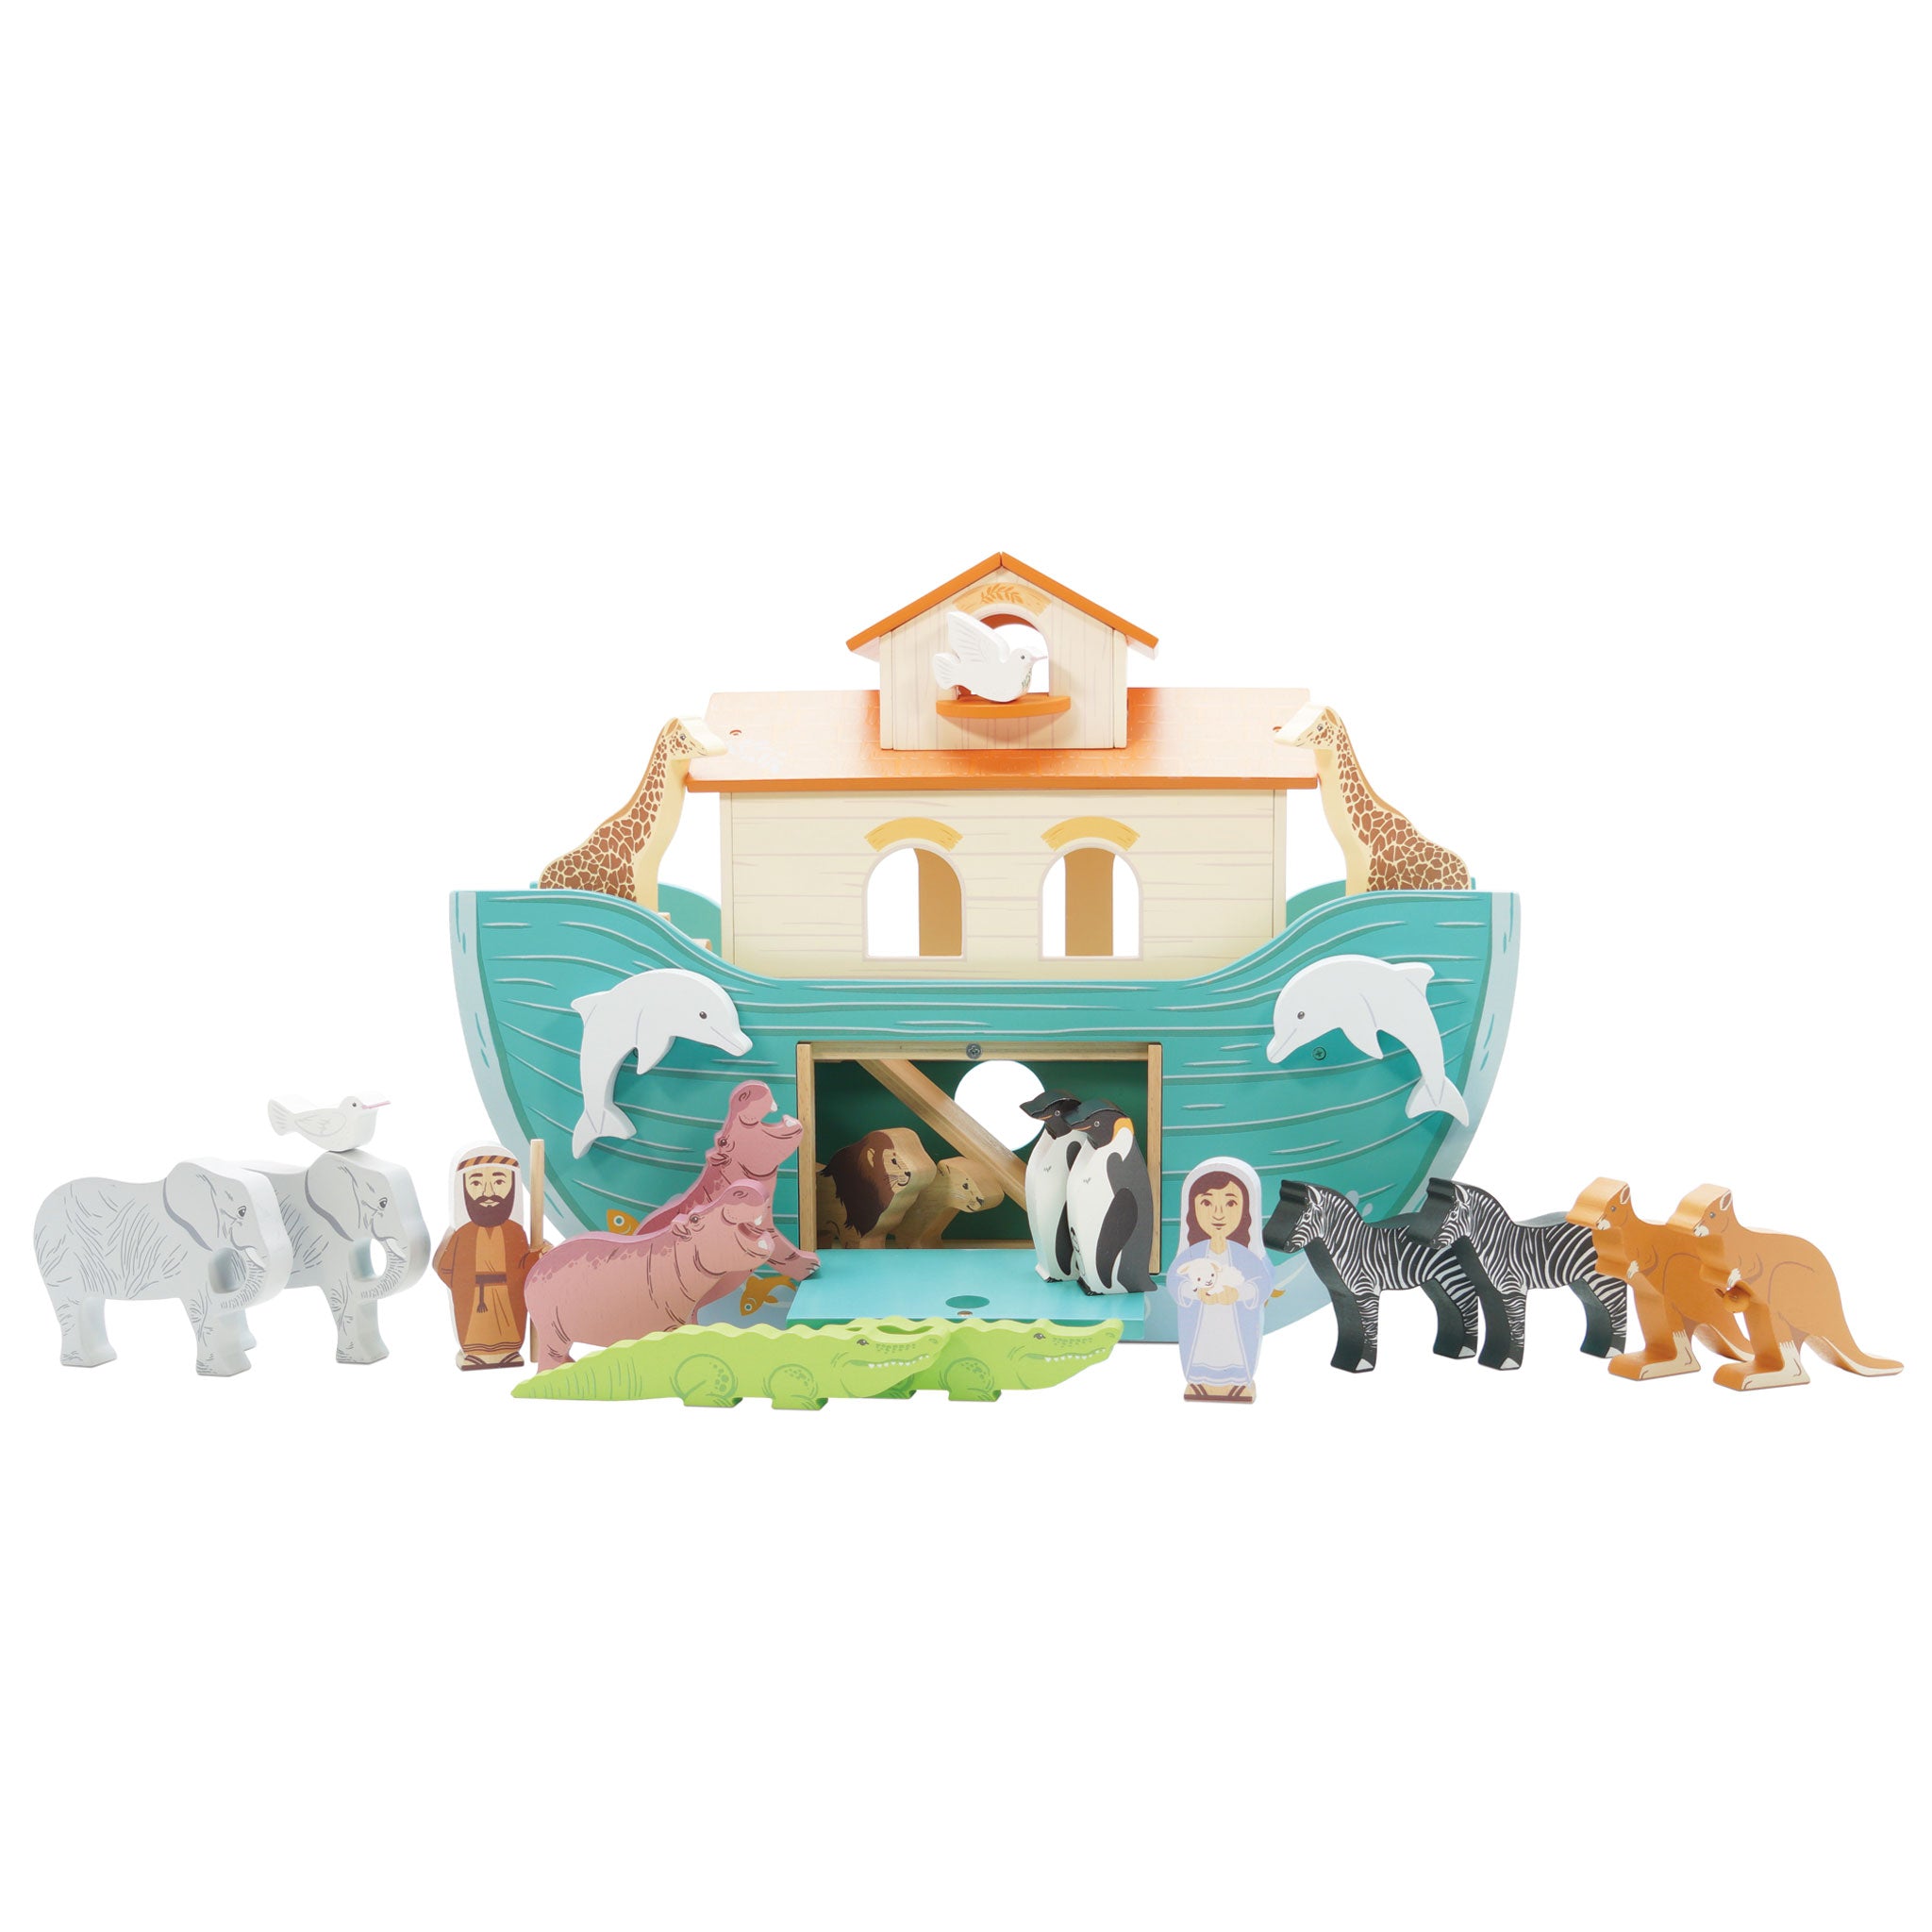 Noah’s Great Wooden Ark & Animals